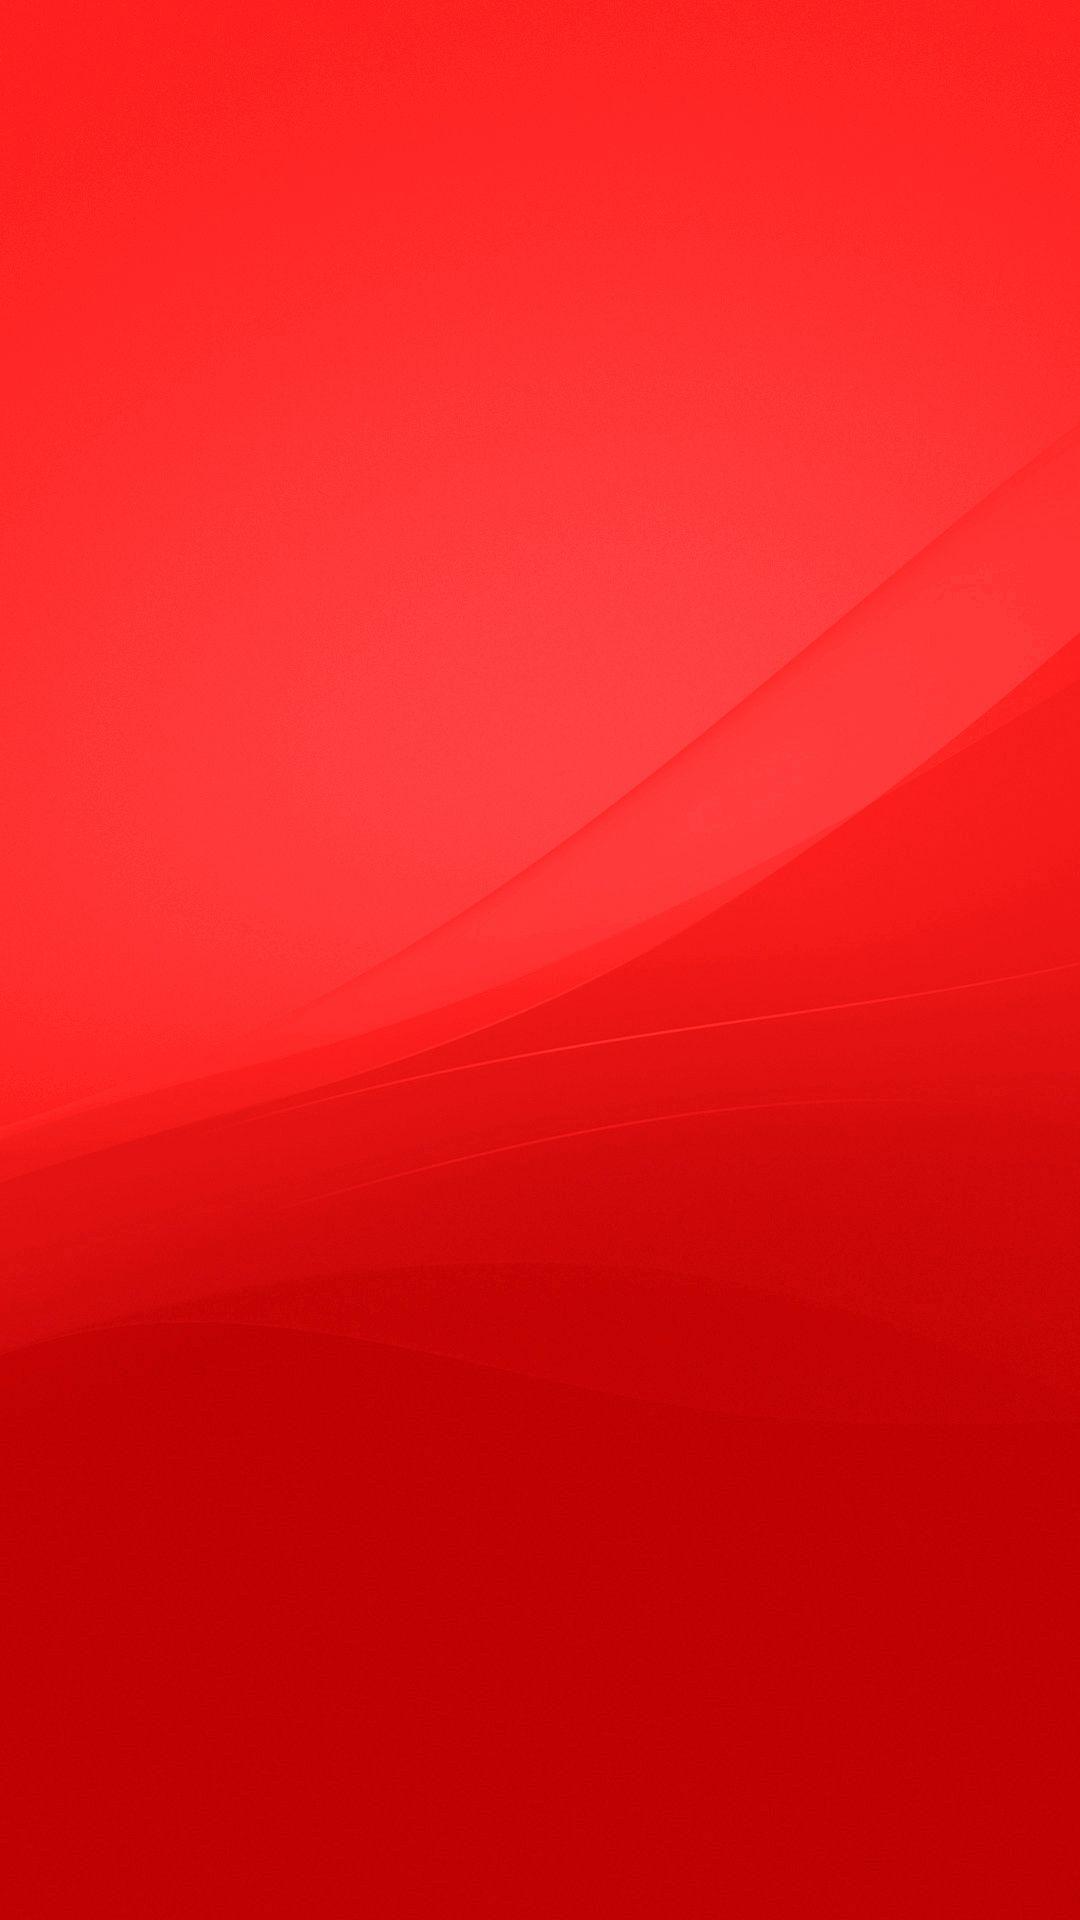 Hình nền đỏ: Với những gam màu đỏ tươi sáng và cuốn hút, hình nền đỏ chắc chắn sẽ làm cho chiếc điện thoại của bạn trở nên đặc biệt hơn bao giờ hết. Hãy tải ngay những hình nền đẹp này để thể hiện sự khác biệt và phong cách riêng của bạn!